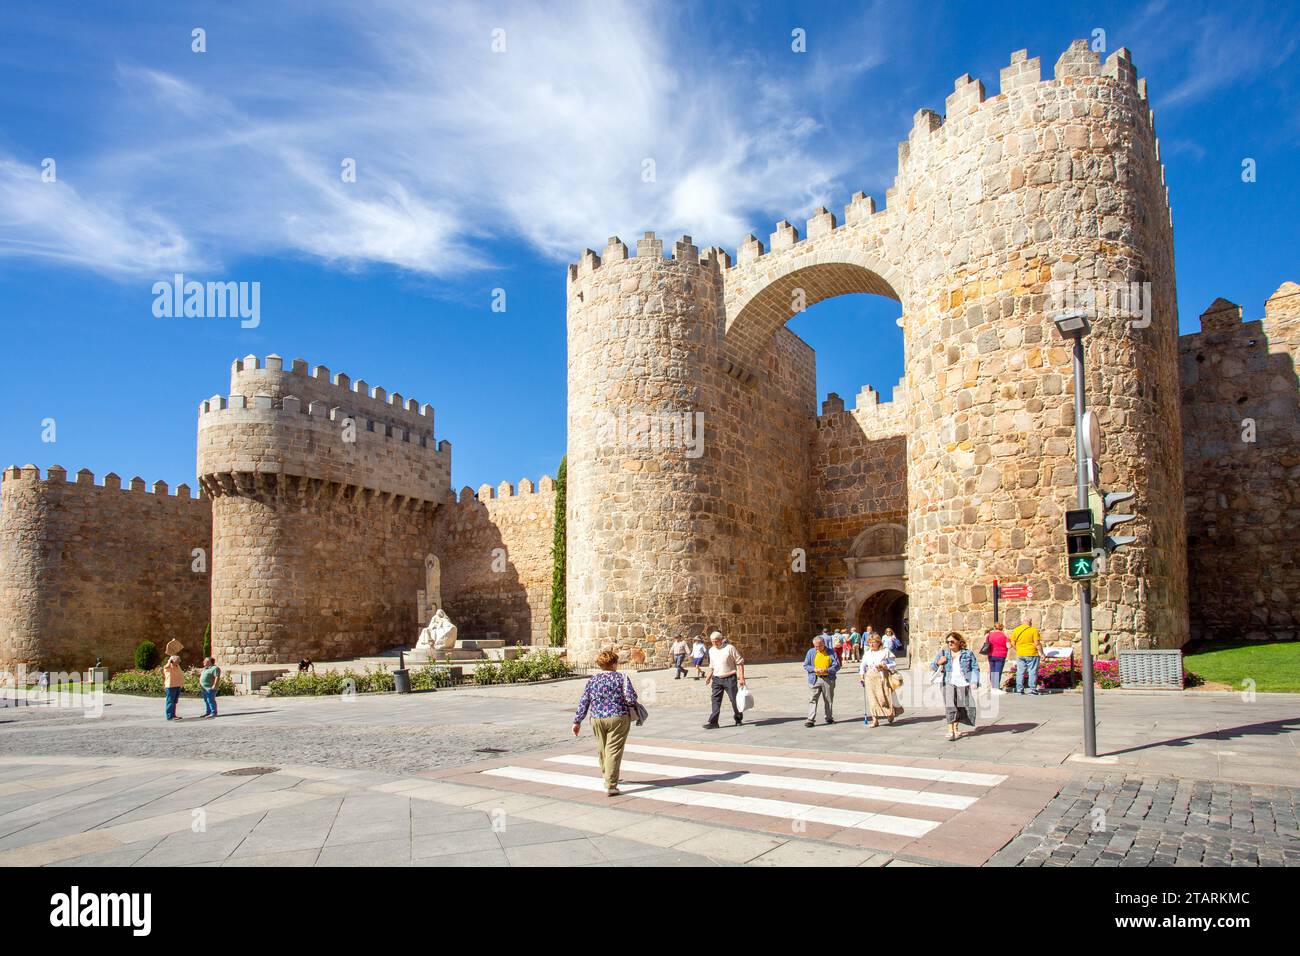 Vista della città fortificata fortificata spagnola di Avila in Spagna Foto Stock